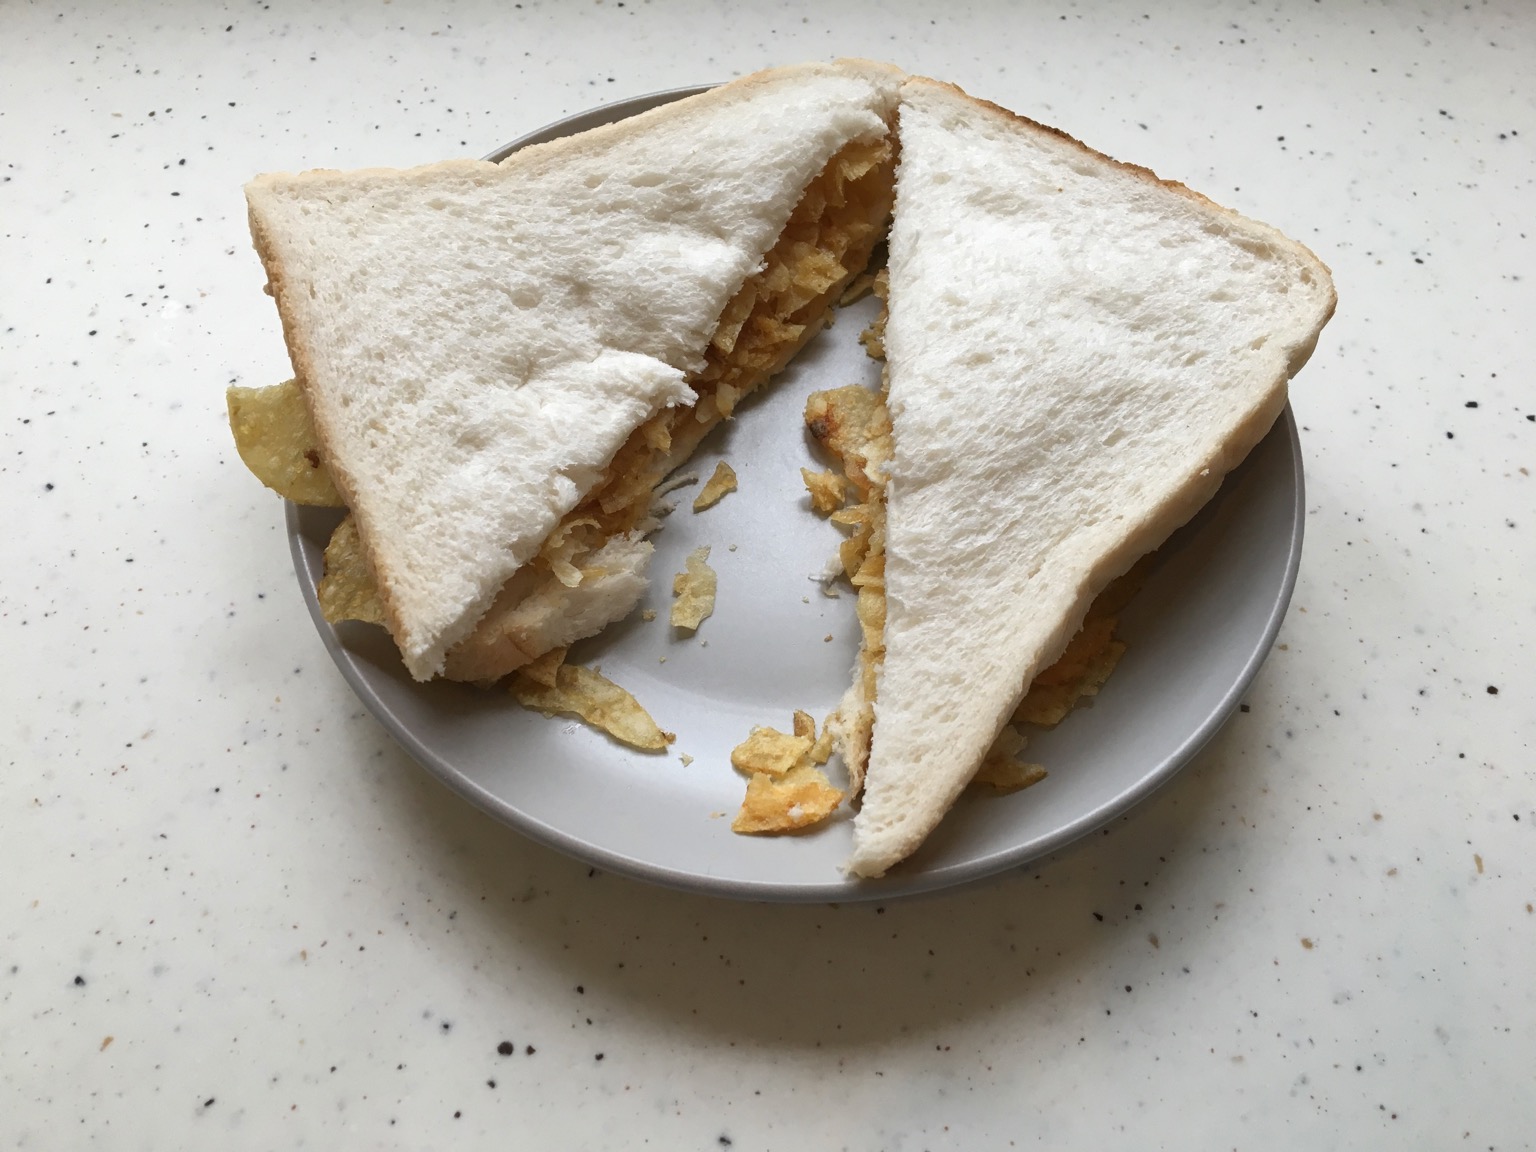 Diagonally-sliced white crisp sandwich